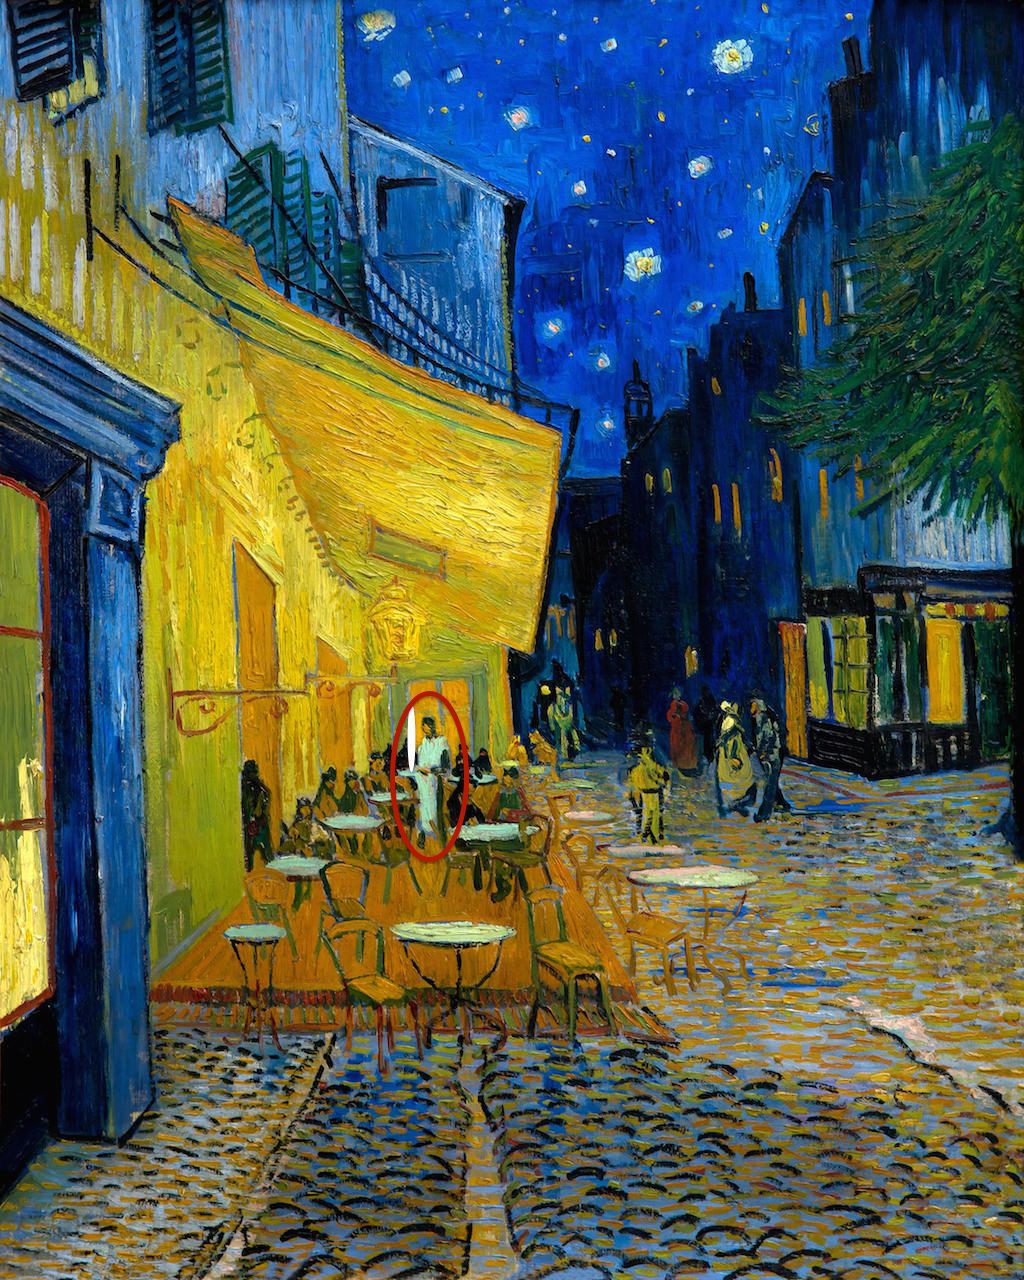 HEERX6: n kahvila-terassi yöllä, kirjoittanut Vincent van Gogh, 1888, Kroller-Muller -museo, Hoge Veluwen kansallispuisto, Otterlo, Alankomaat, Eurooppa